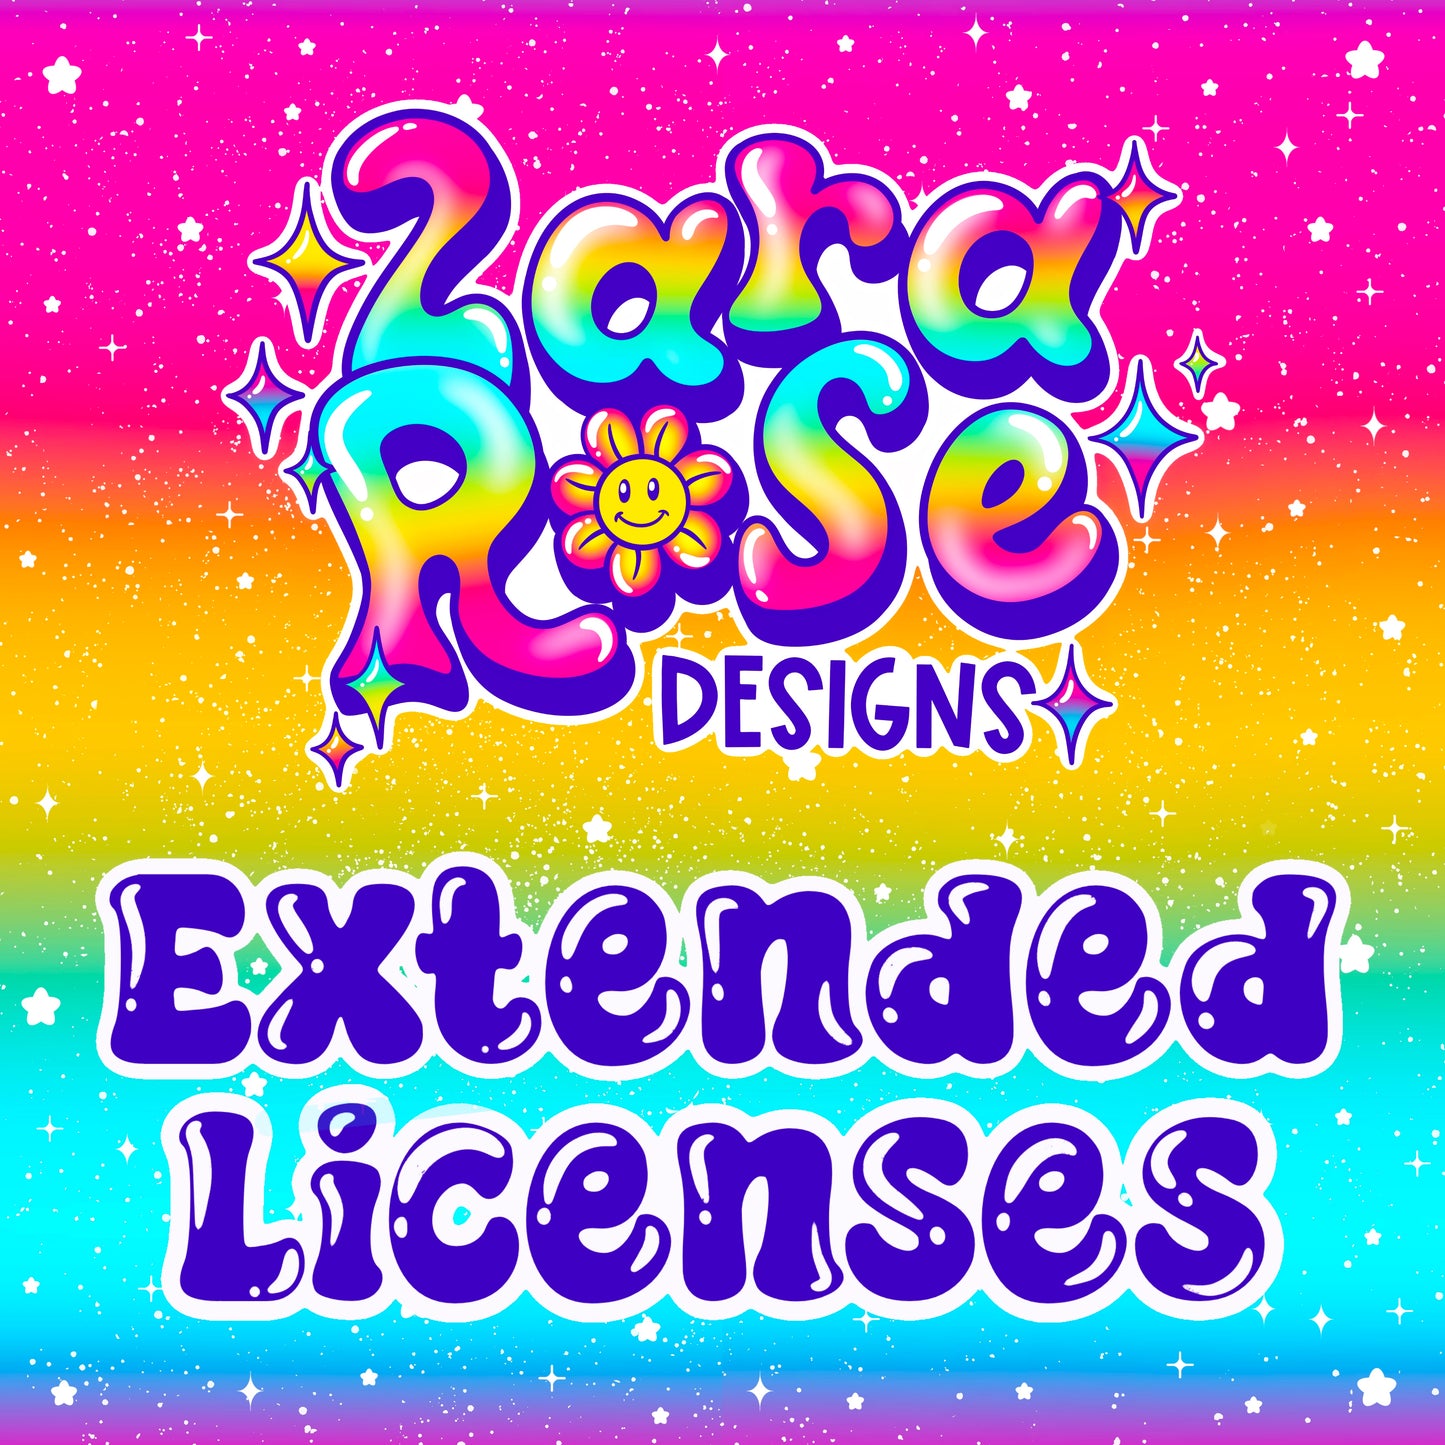 Extended License 5 pck